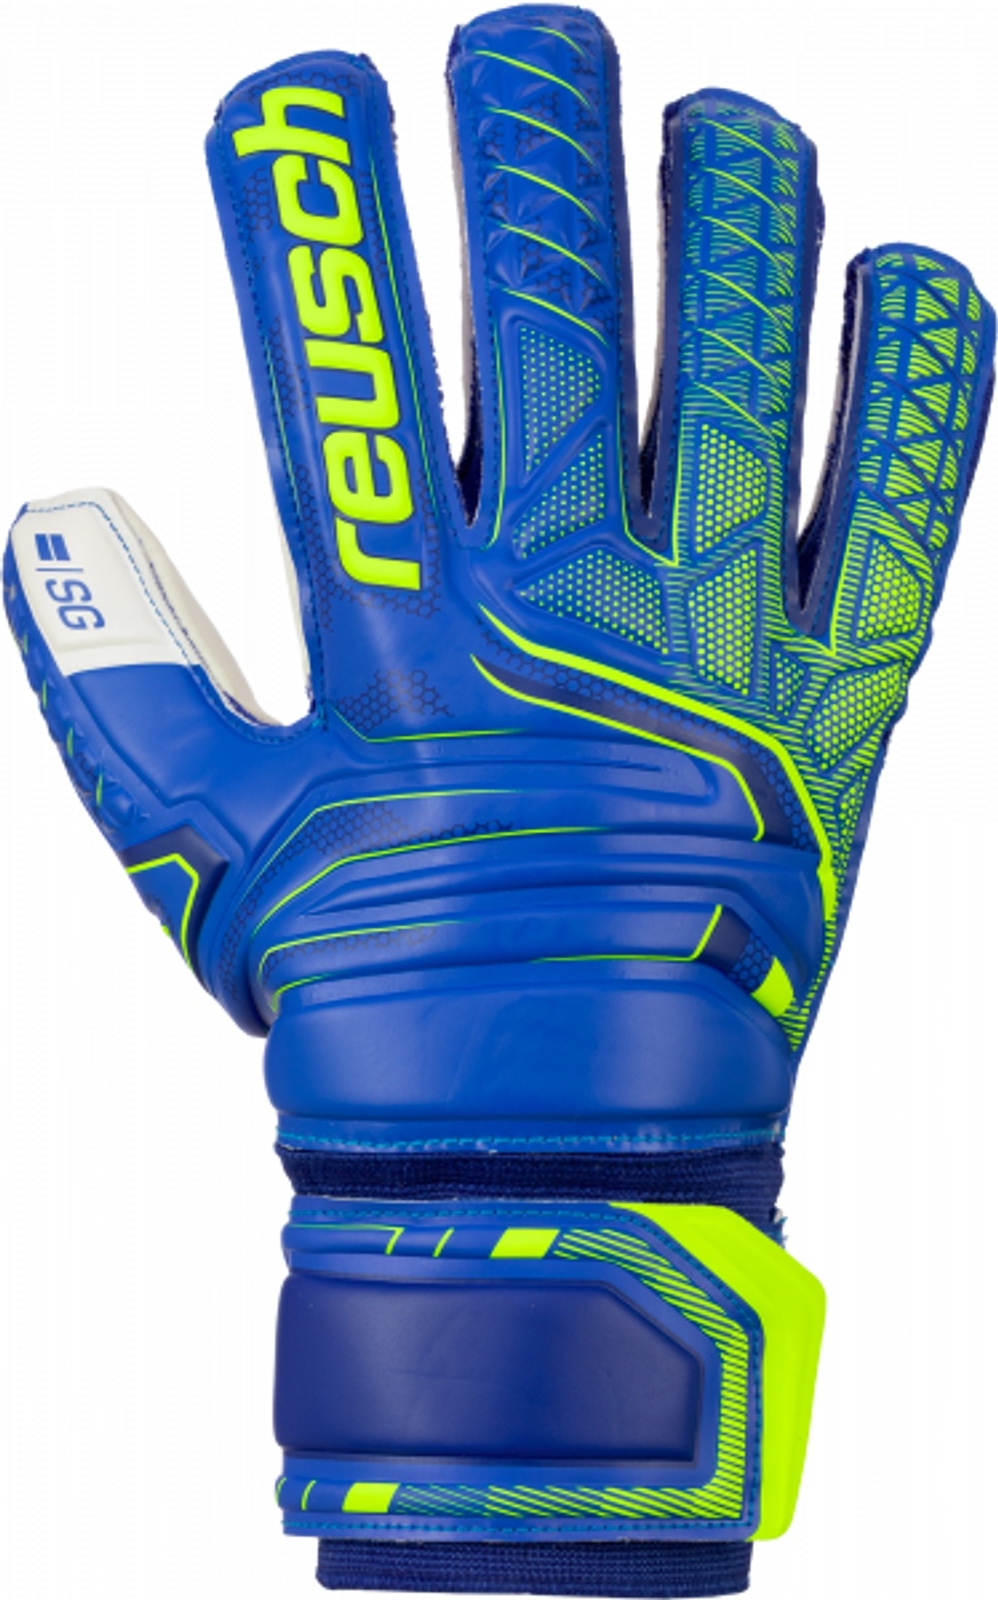 Reusch Attrakt SG Finger Support Goal Keeping Gloves